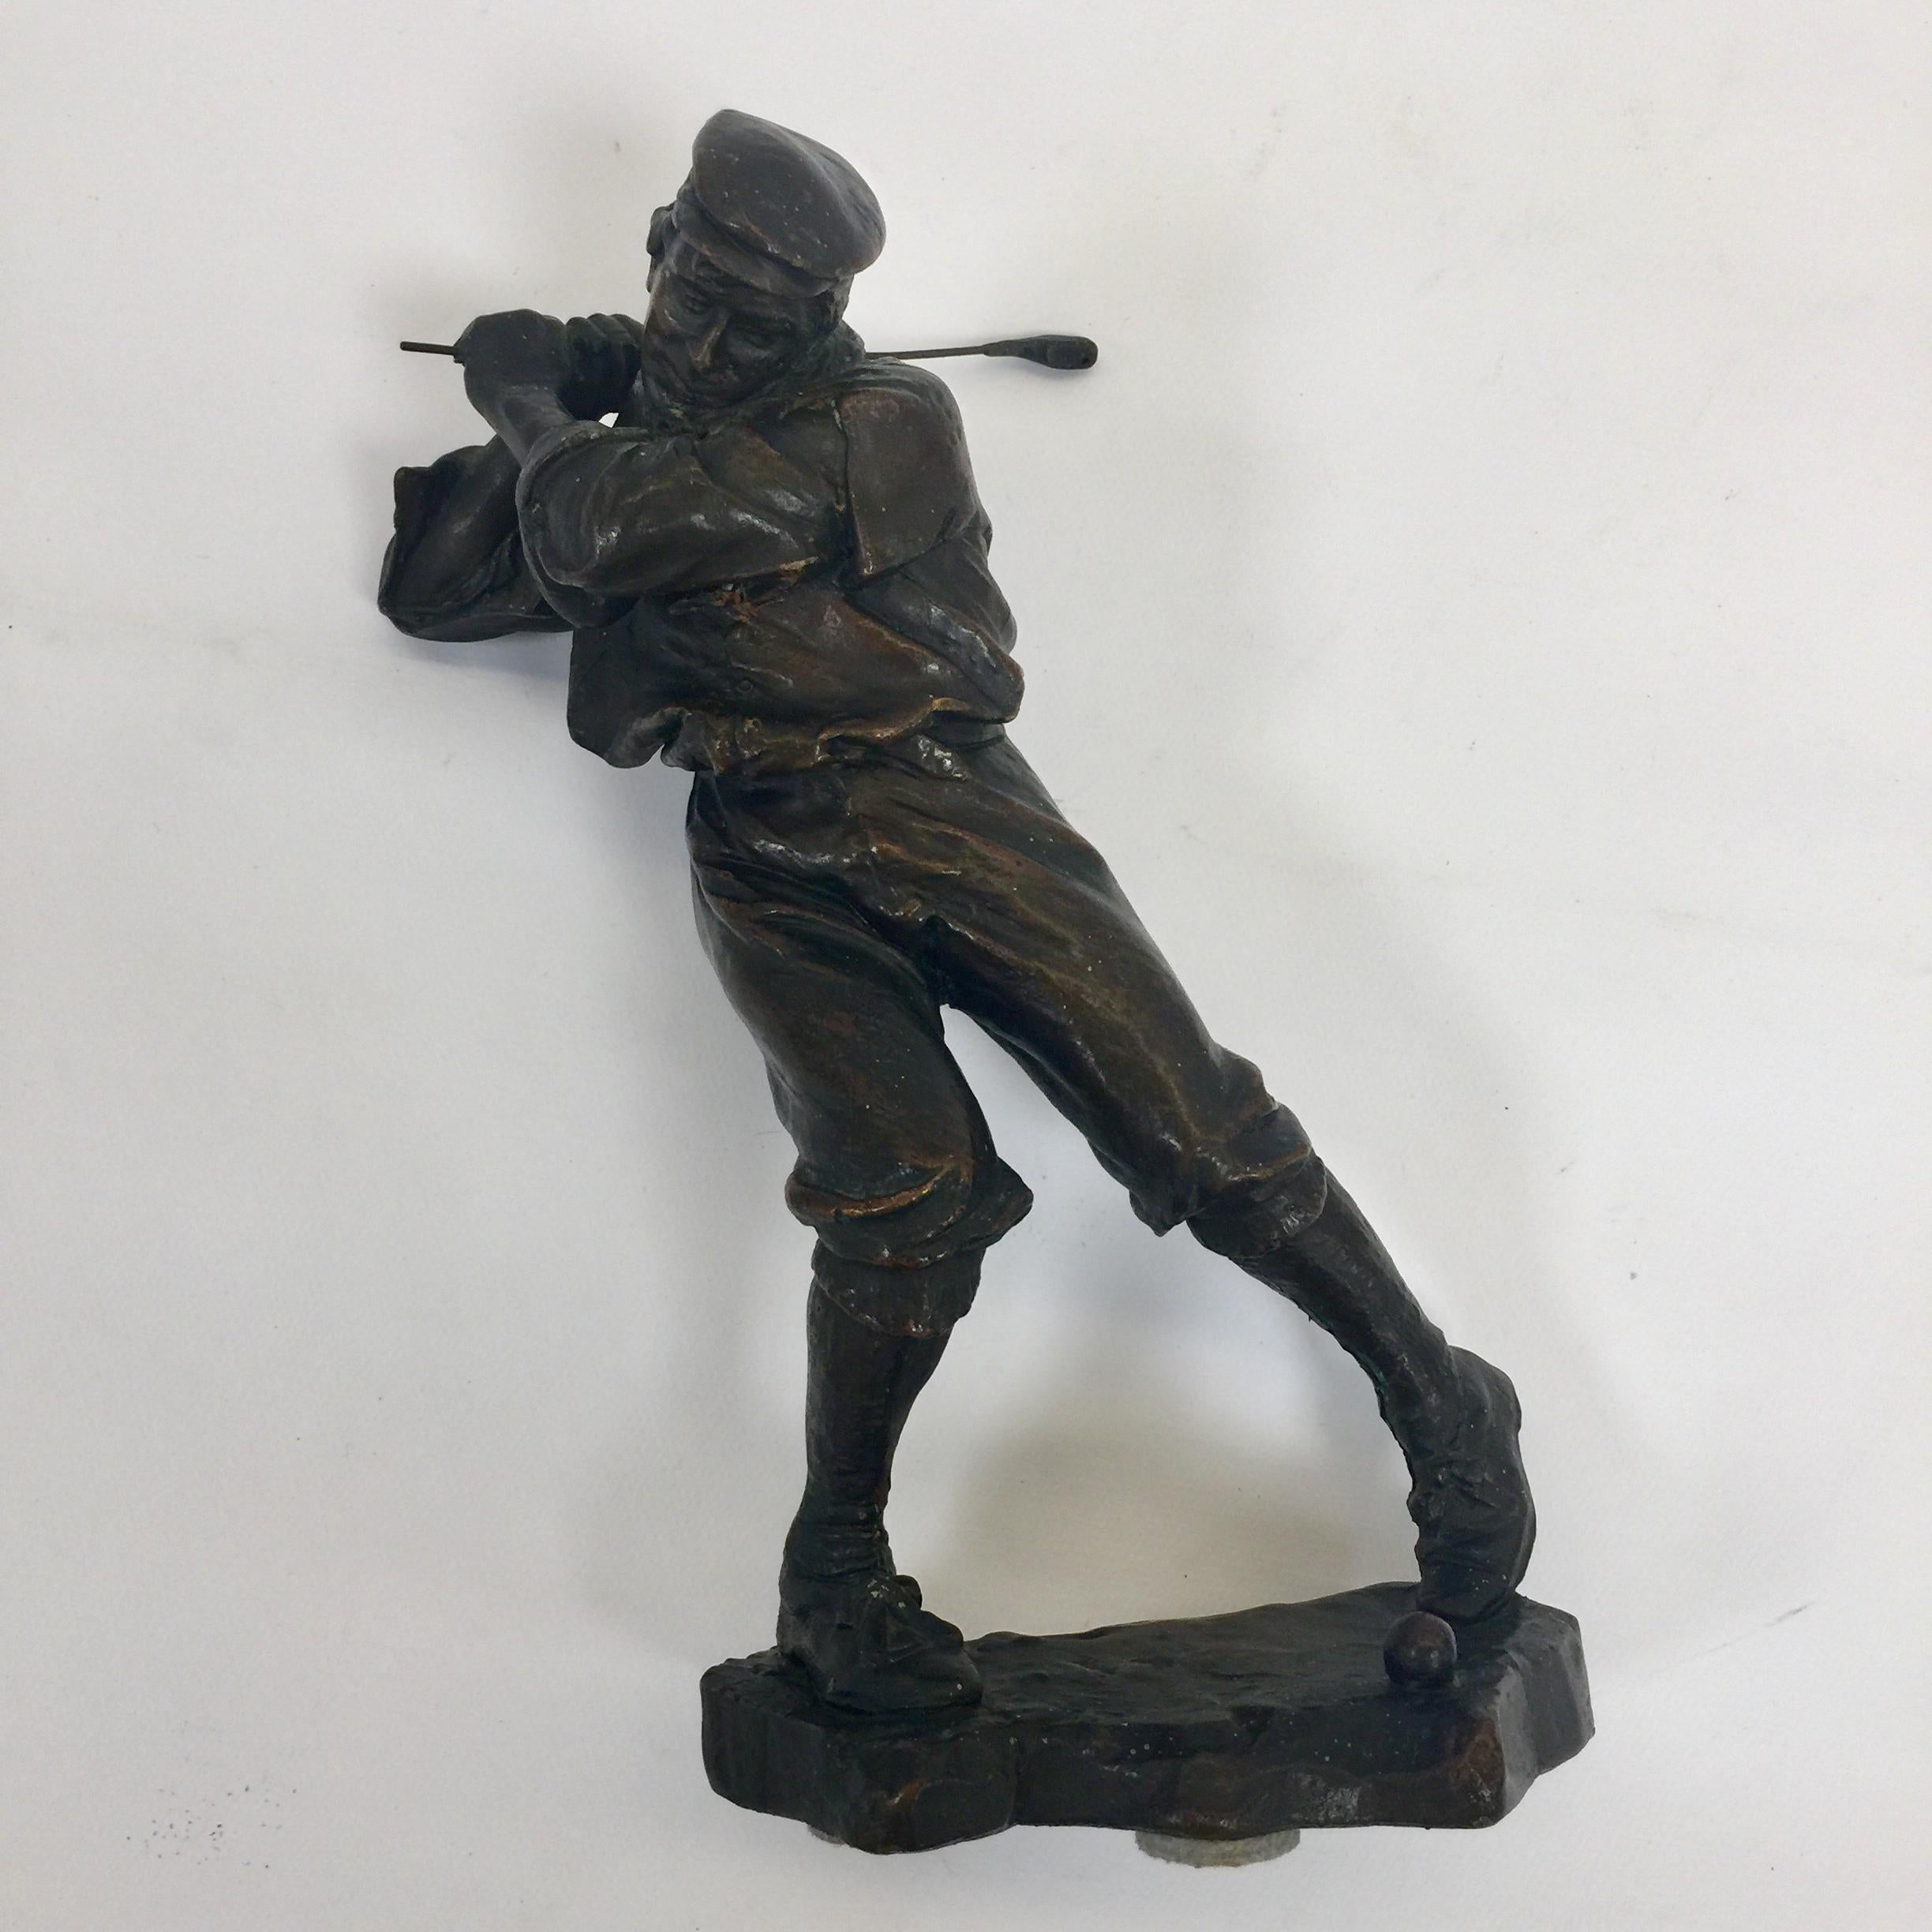 Incredible petit bronze representing an American golfer original Art Deco signed P.Mori New York.